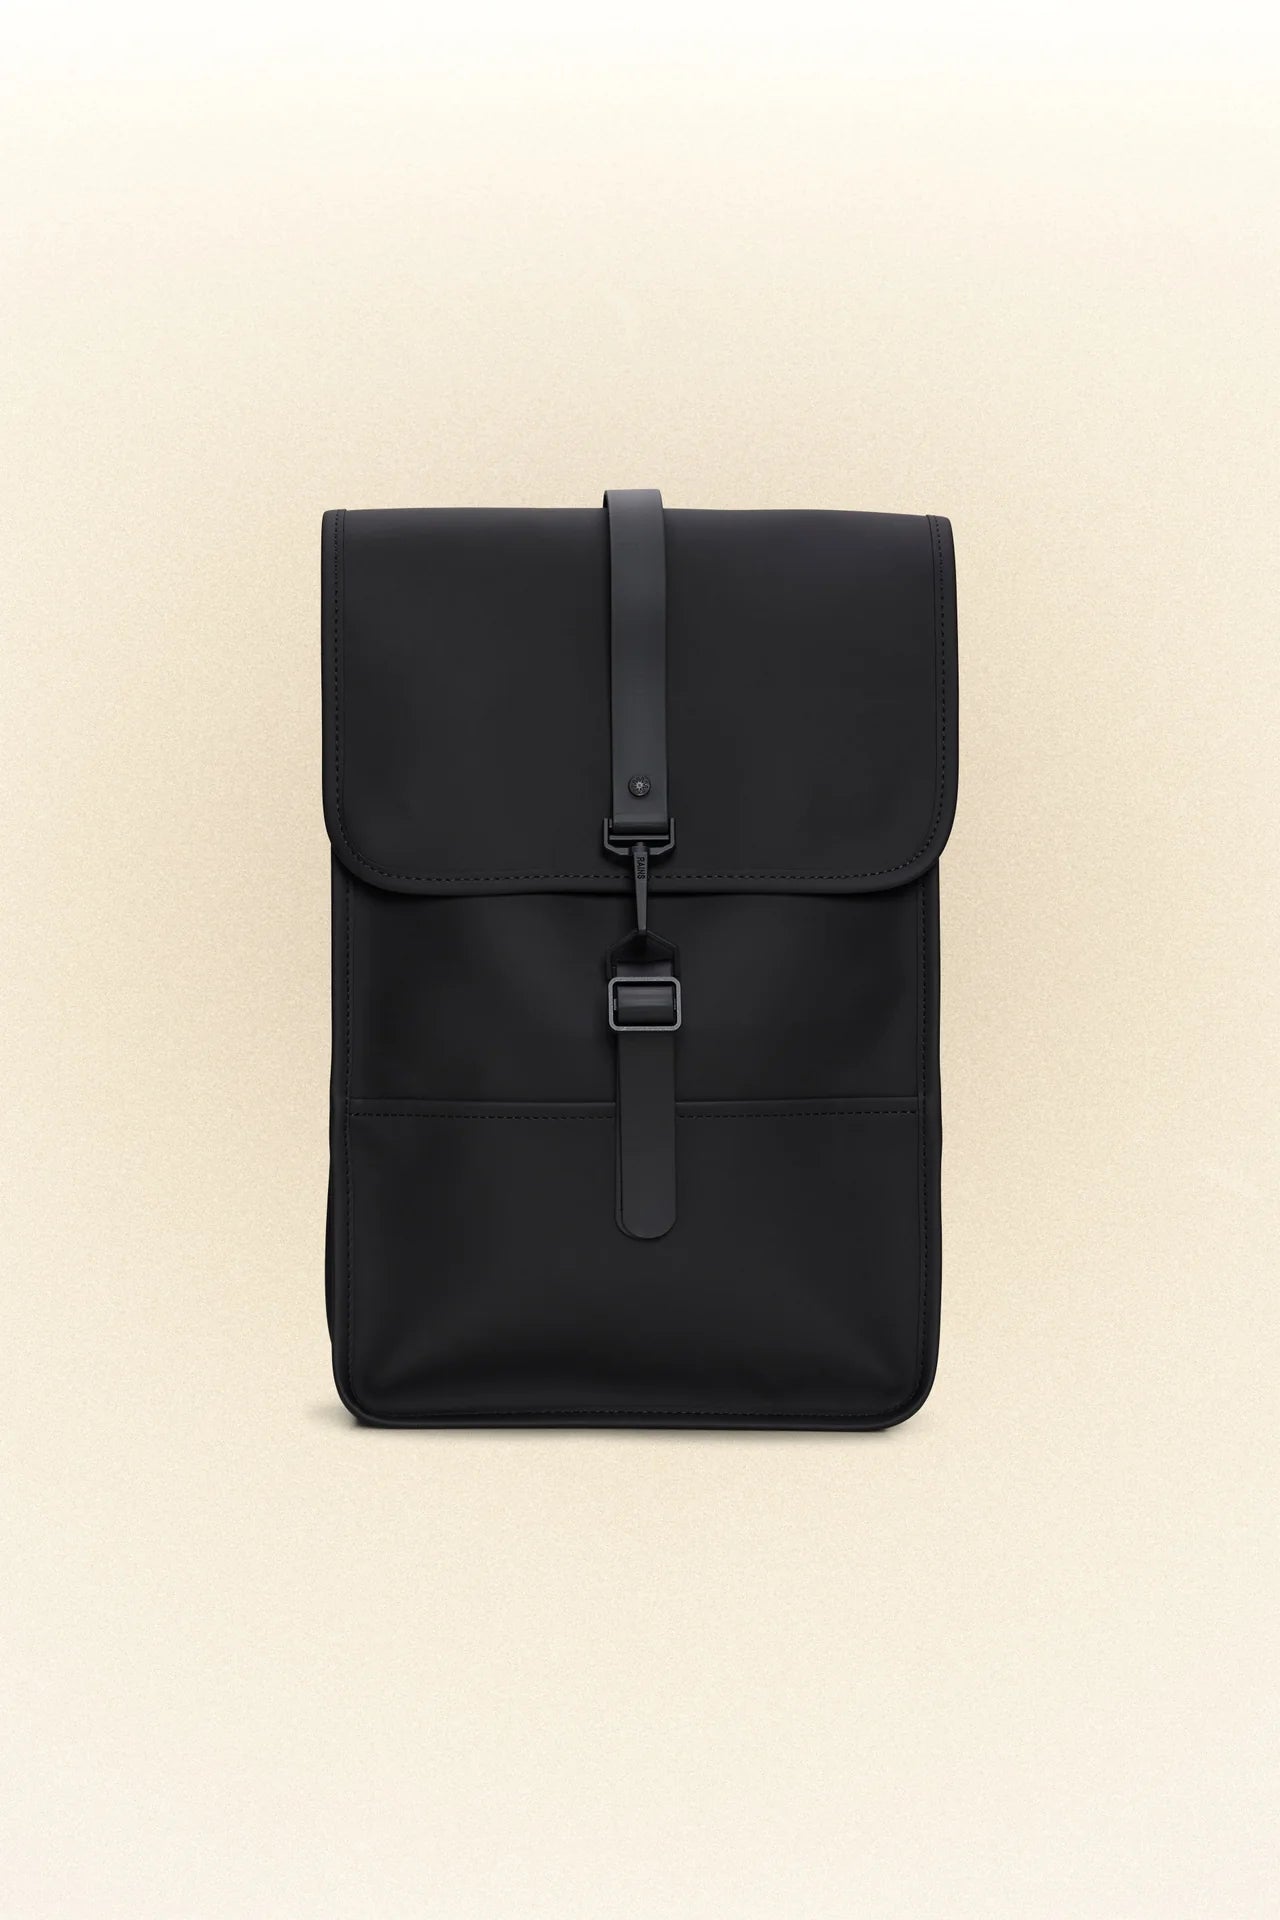 A black Rains mini backpack on a white background.